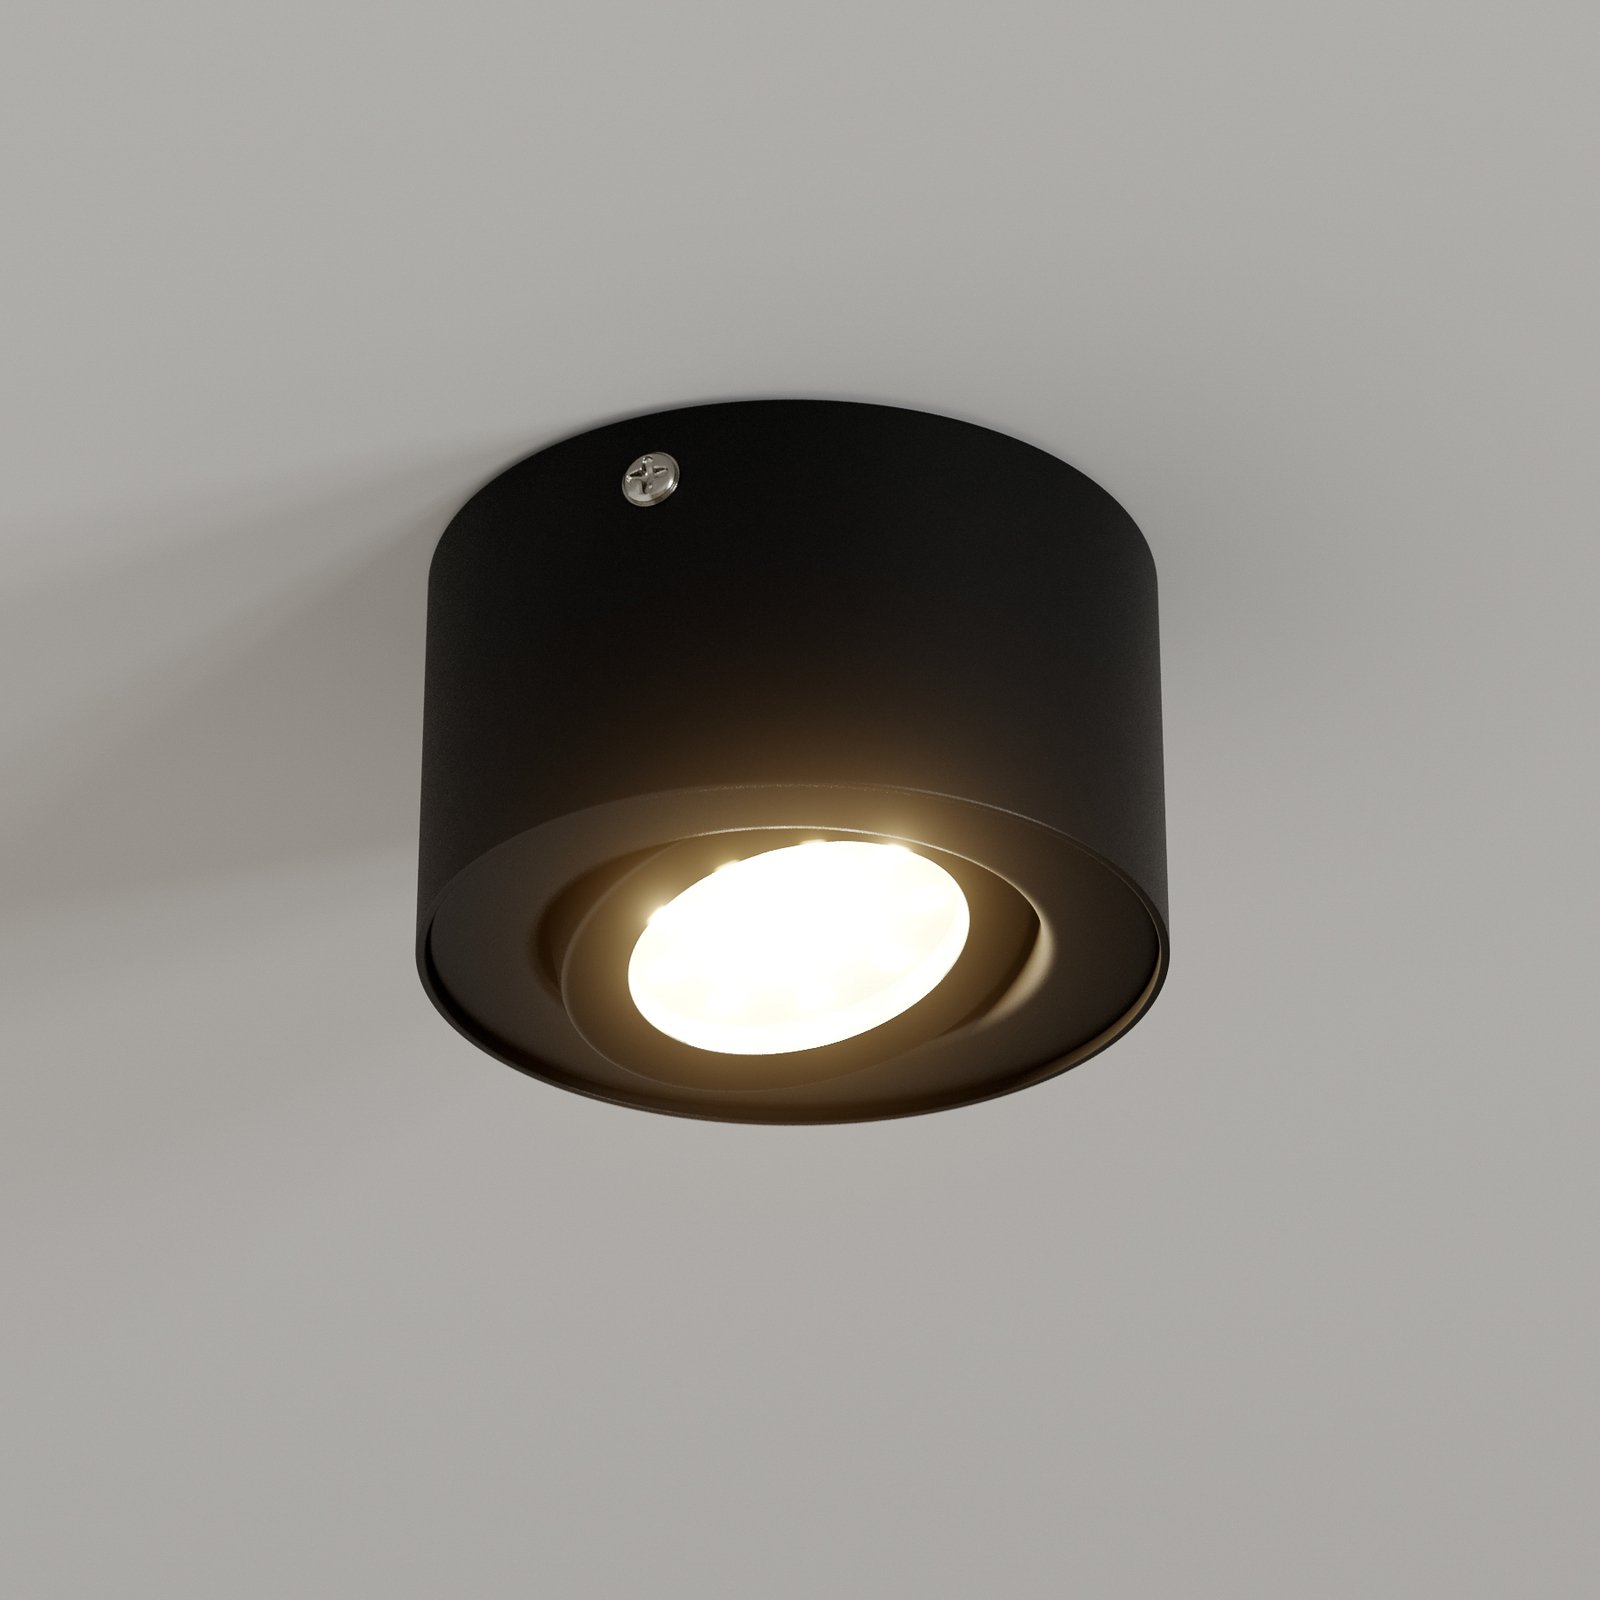 LED-takspotlight i rør, svart